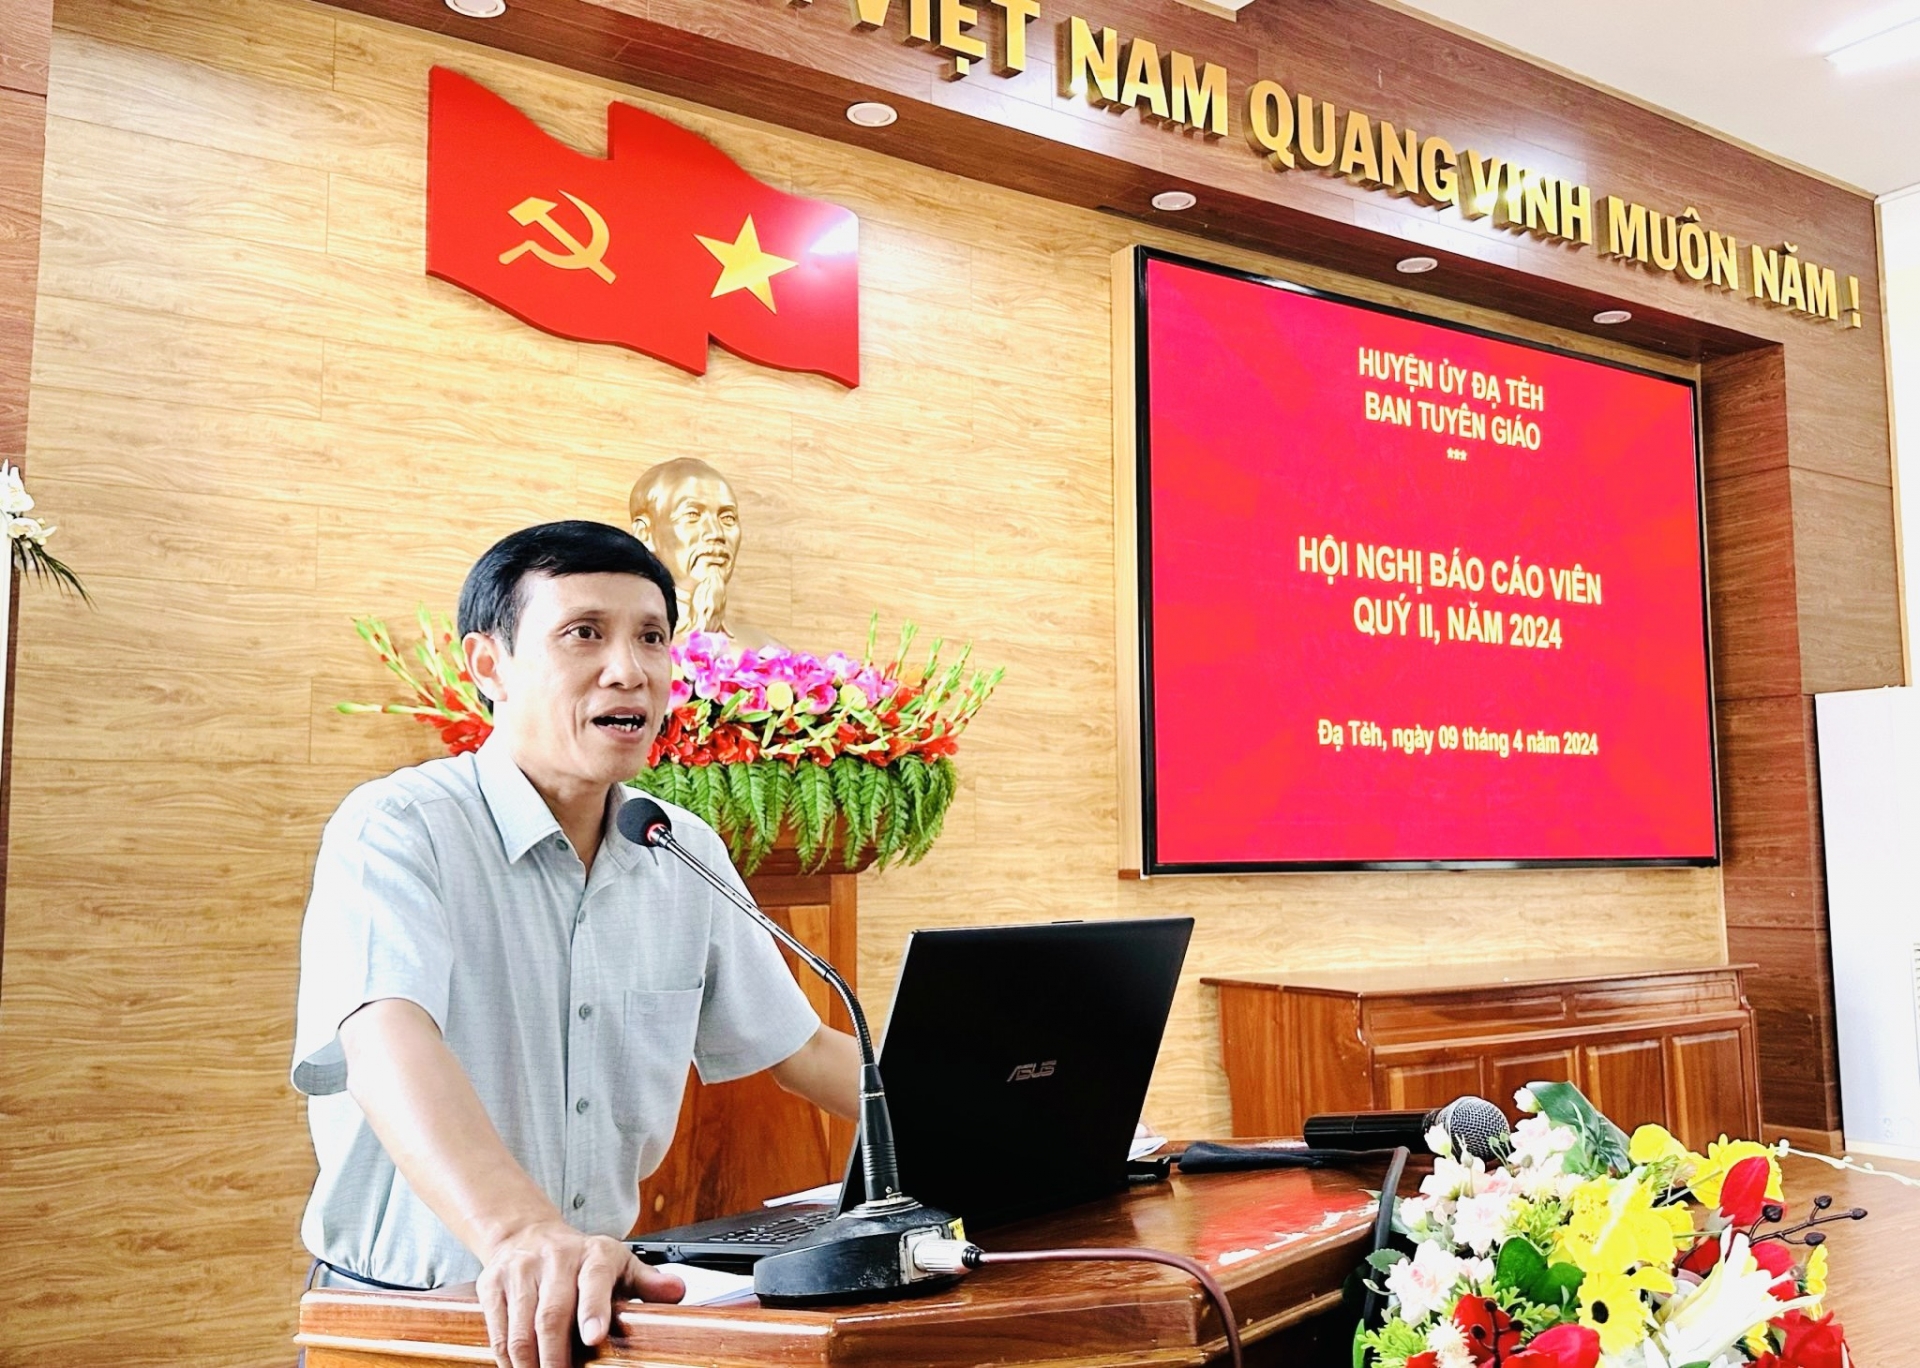 Đồng chí Nguyễn Mạnh Việt - Bí thư Huyện ủy Đạ Tẻh phát biểu tại buổi sinh hoạt.